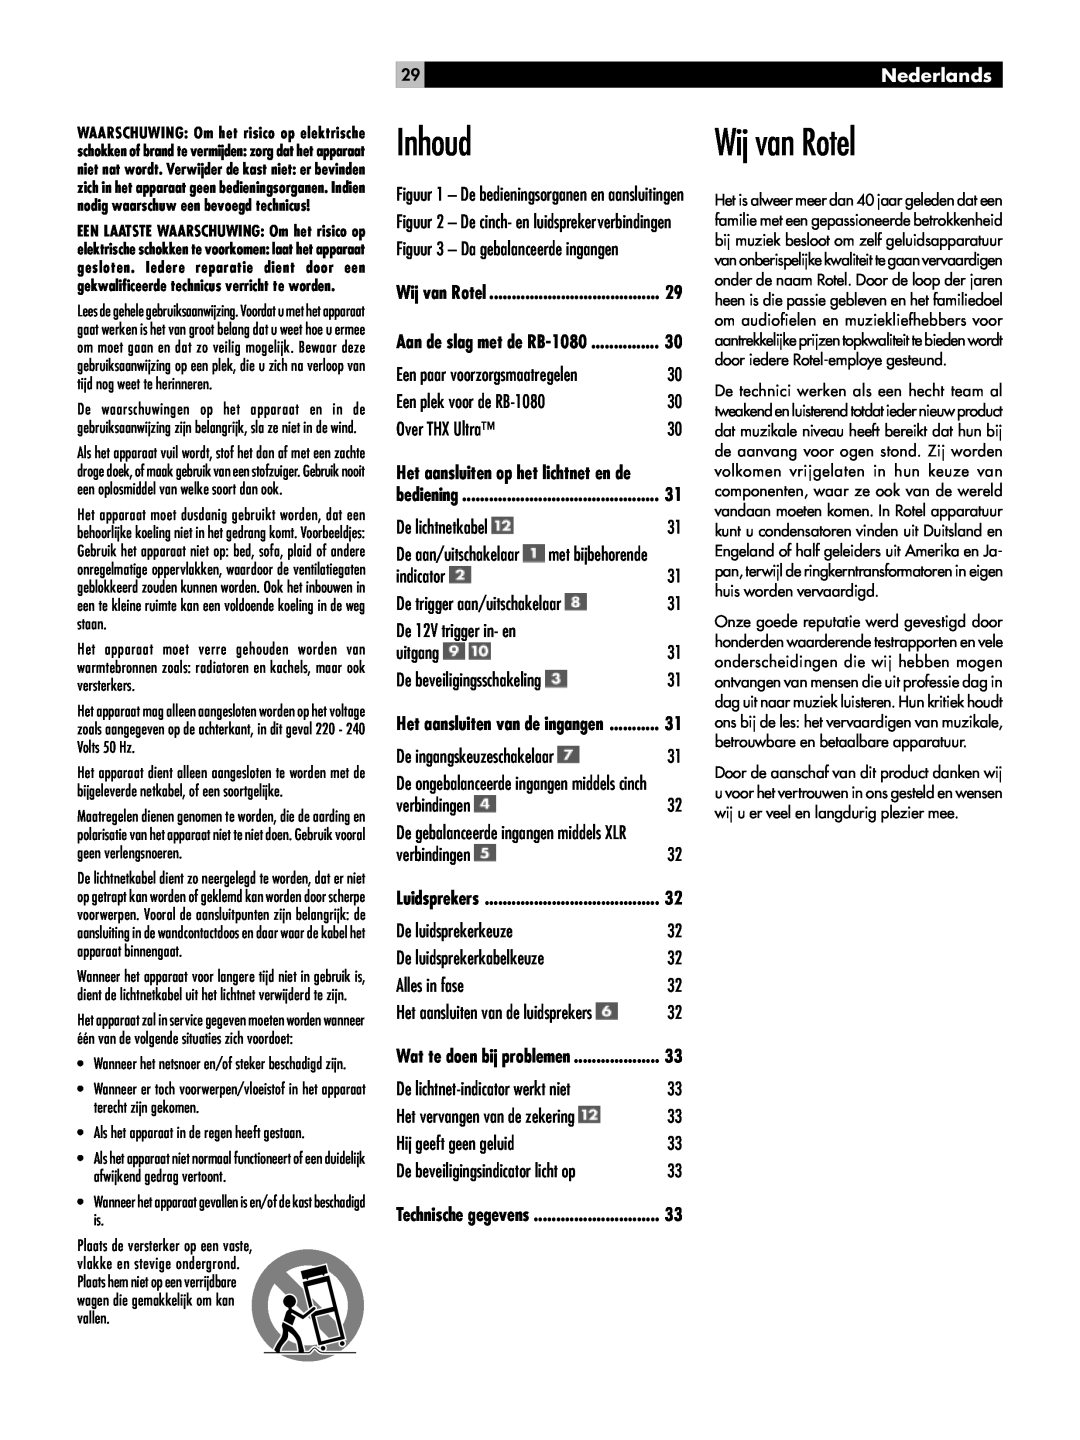 Rotel RMB-1080 owner manual Inhoud, Wij van Rotel, 29Nederlands, Technische gegevens 